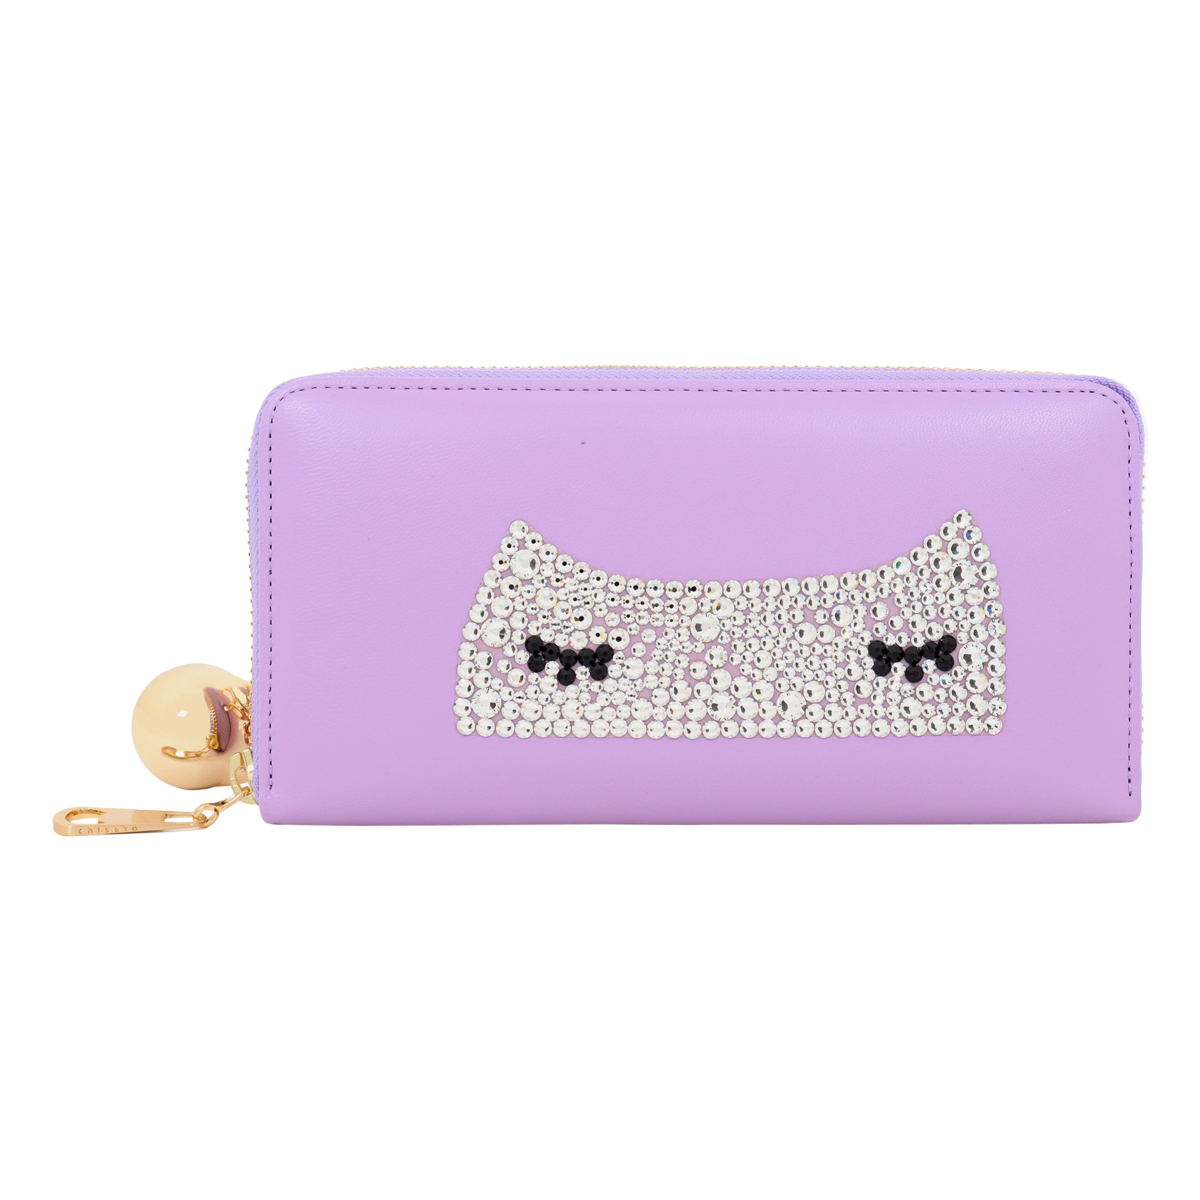 ツモリチサト 長財布 紫 猫 tsumori chisato carry 未使用 - 長財布